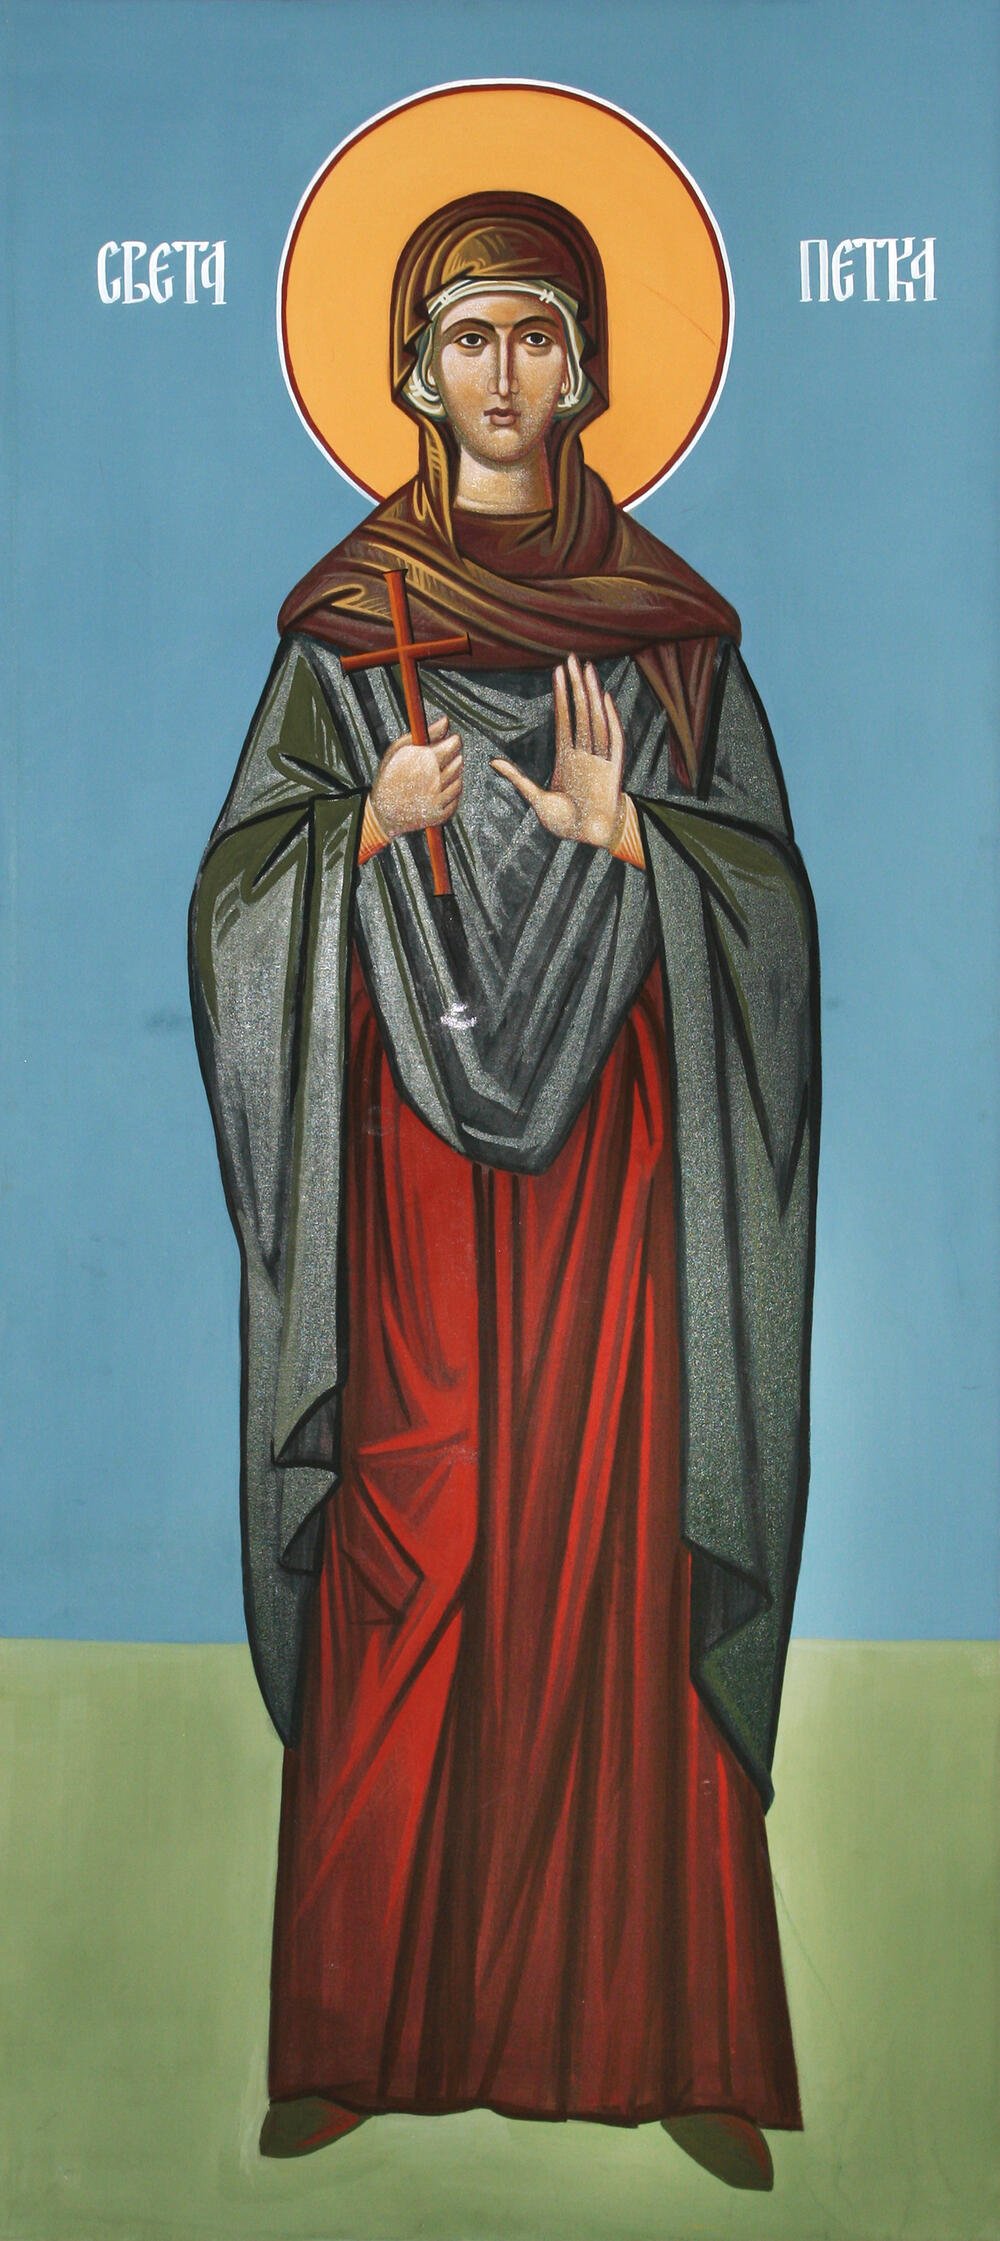 Данас је Света Петка - светитељка којој се обраћају жене свих вера